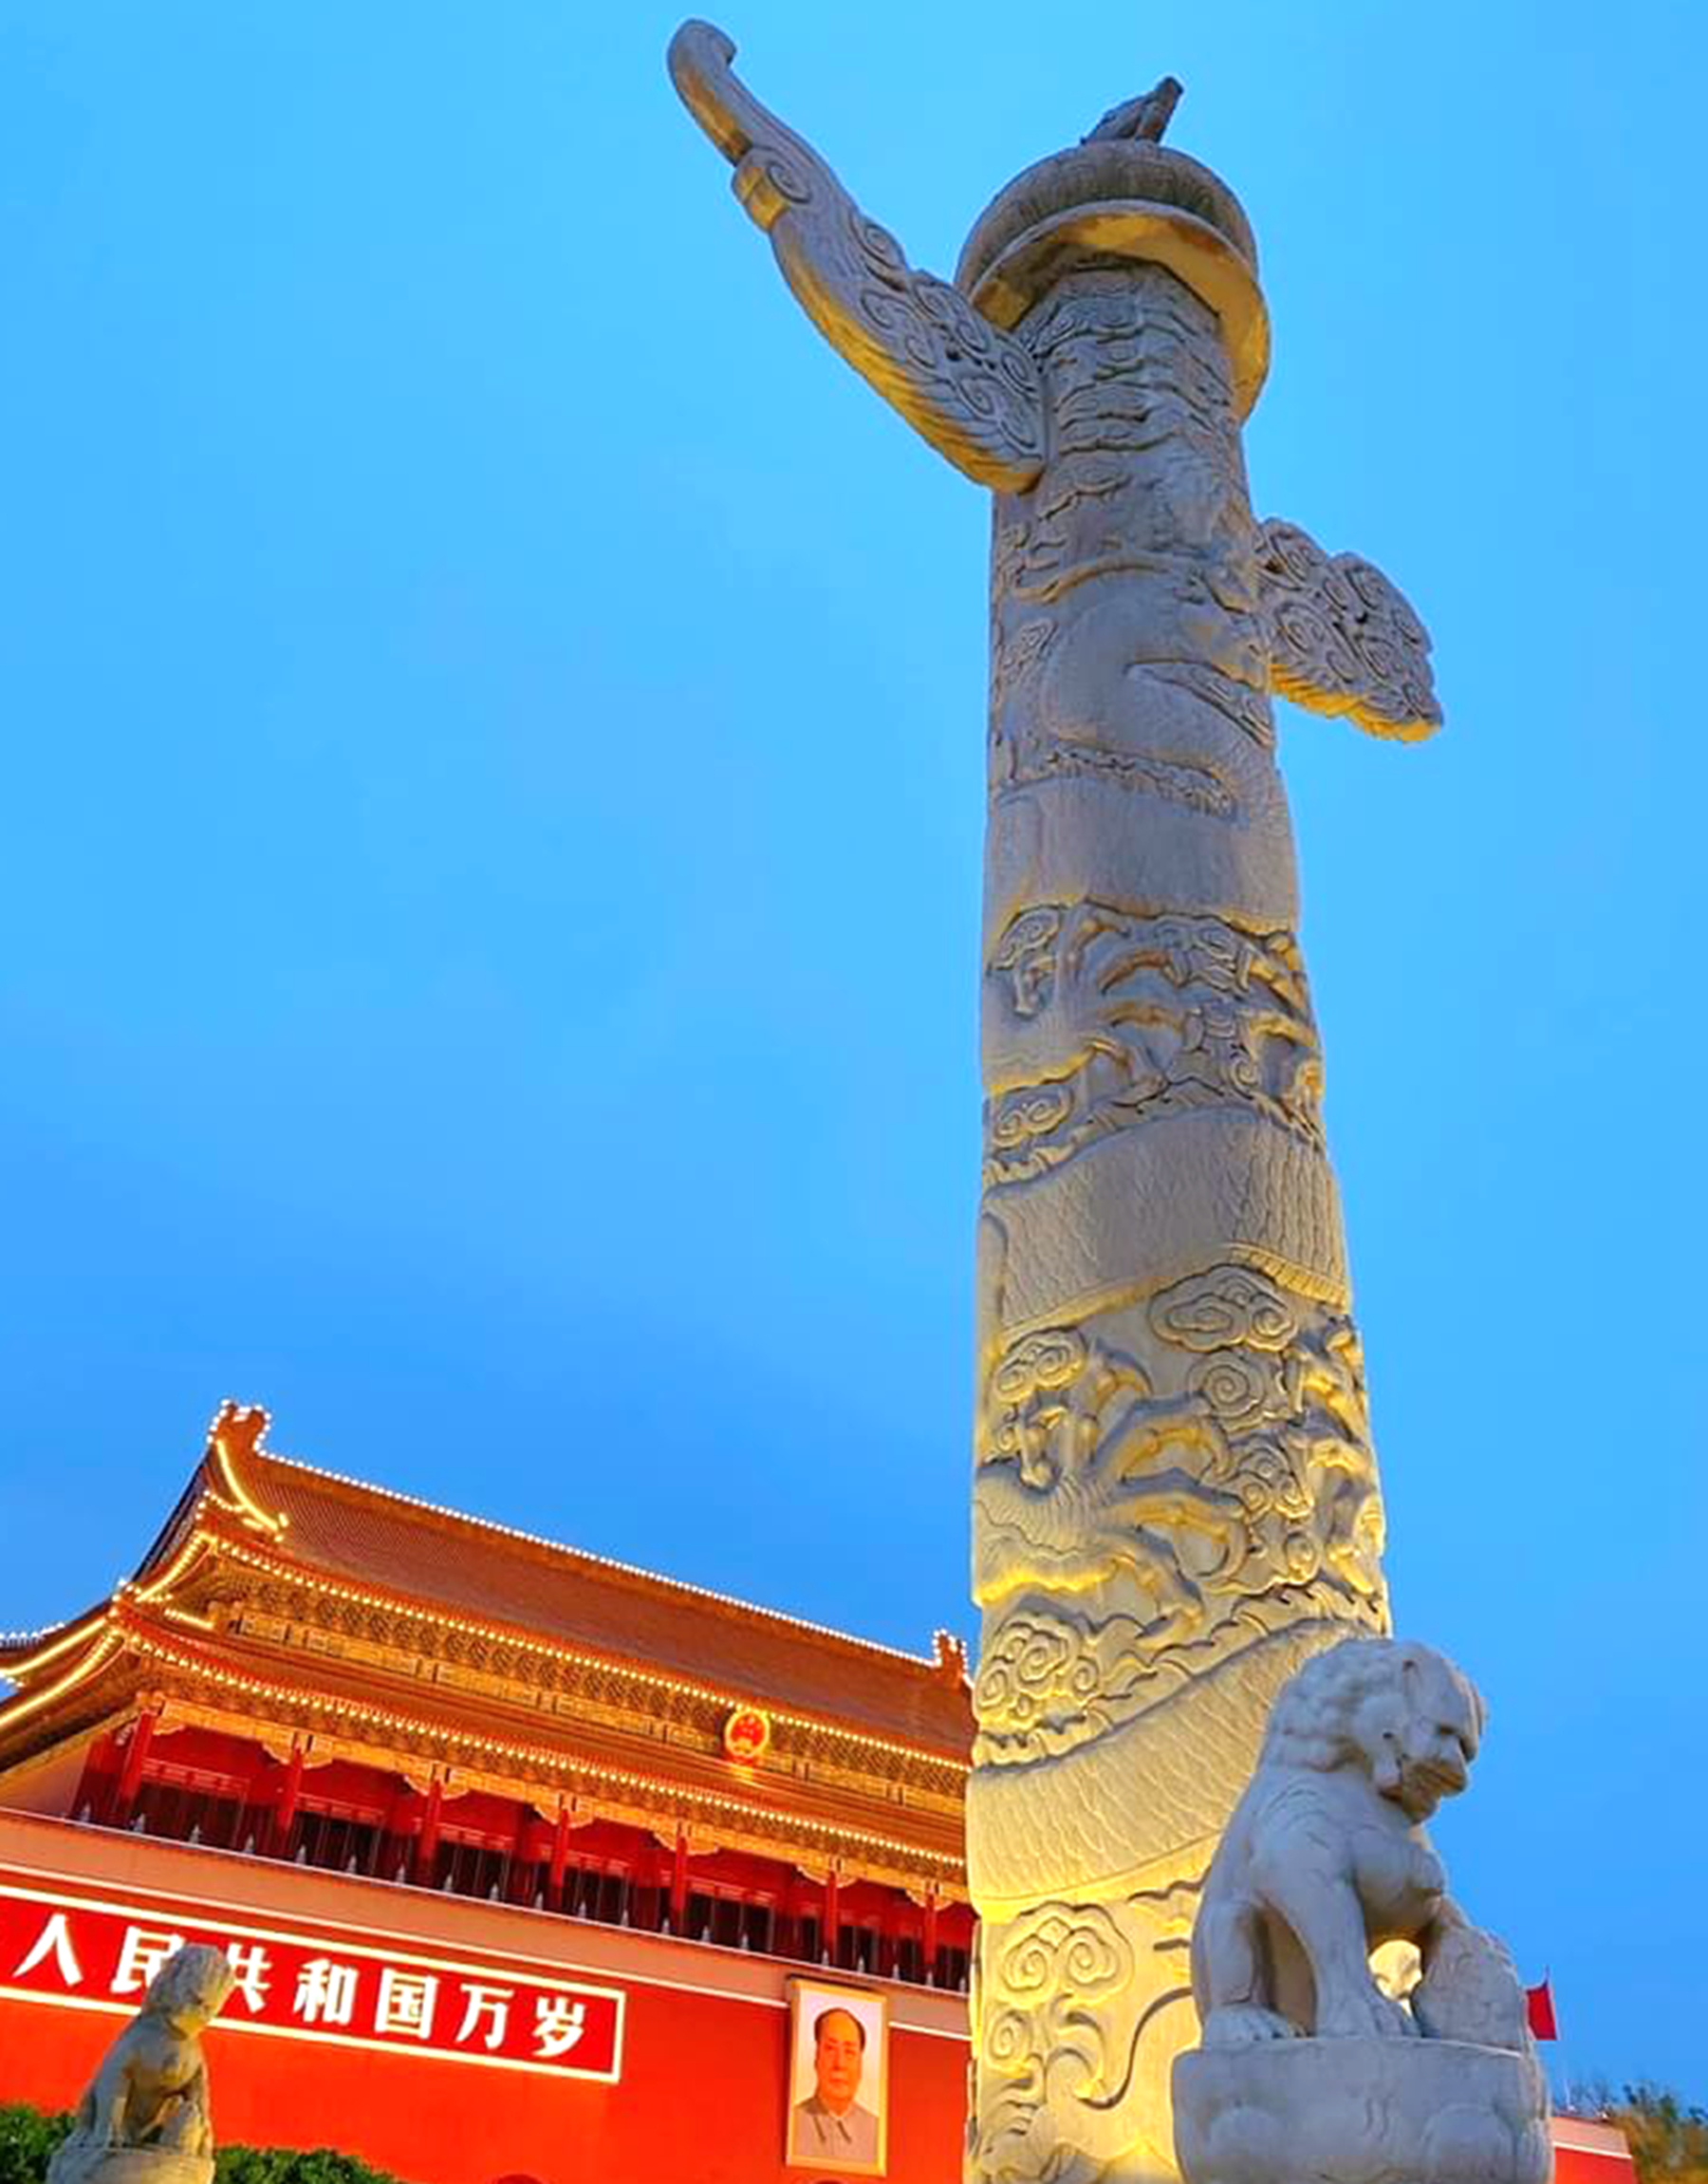 File:天安门广场 人民英雄纪念碑.JPG - Wikimedia Commons